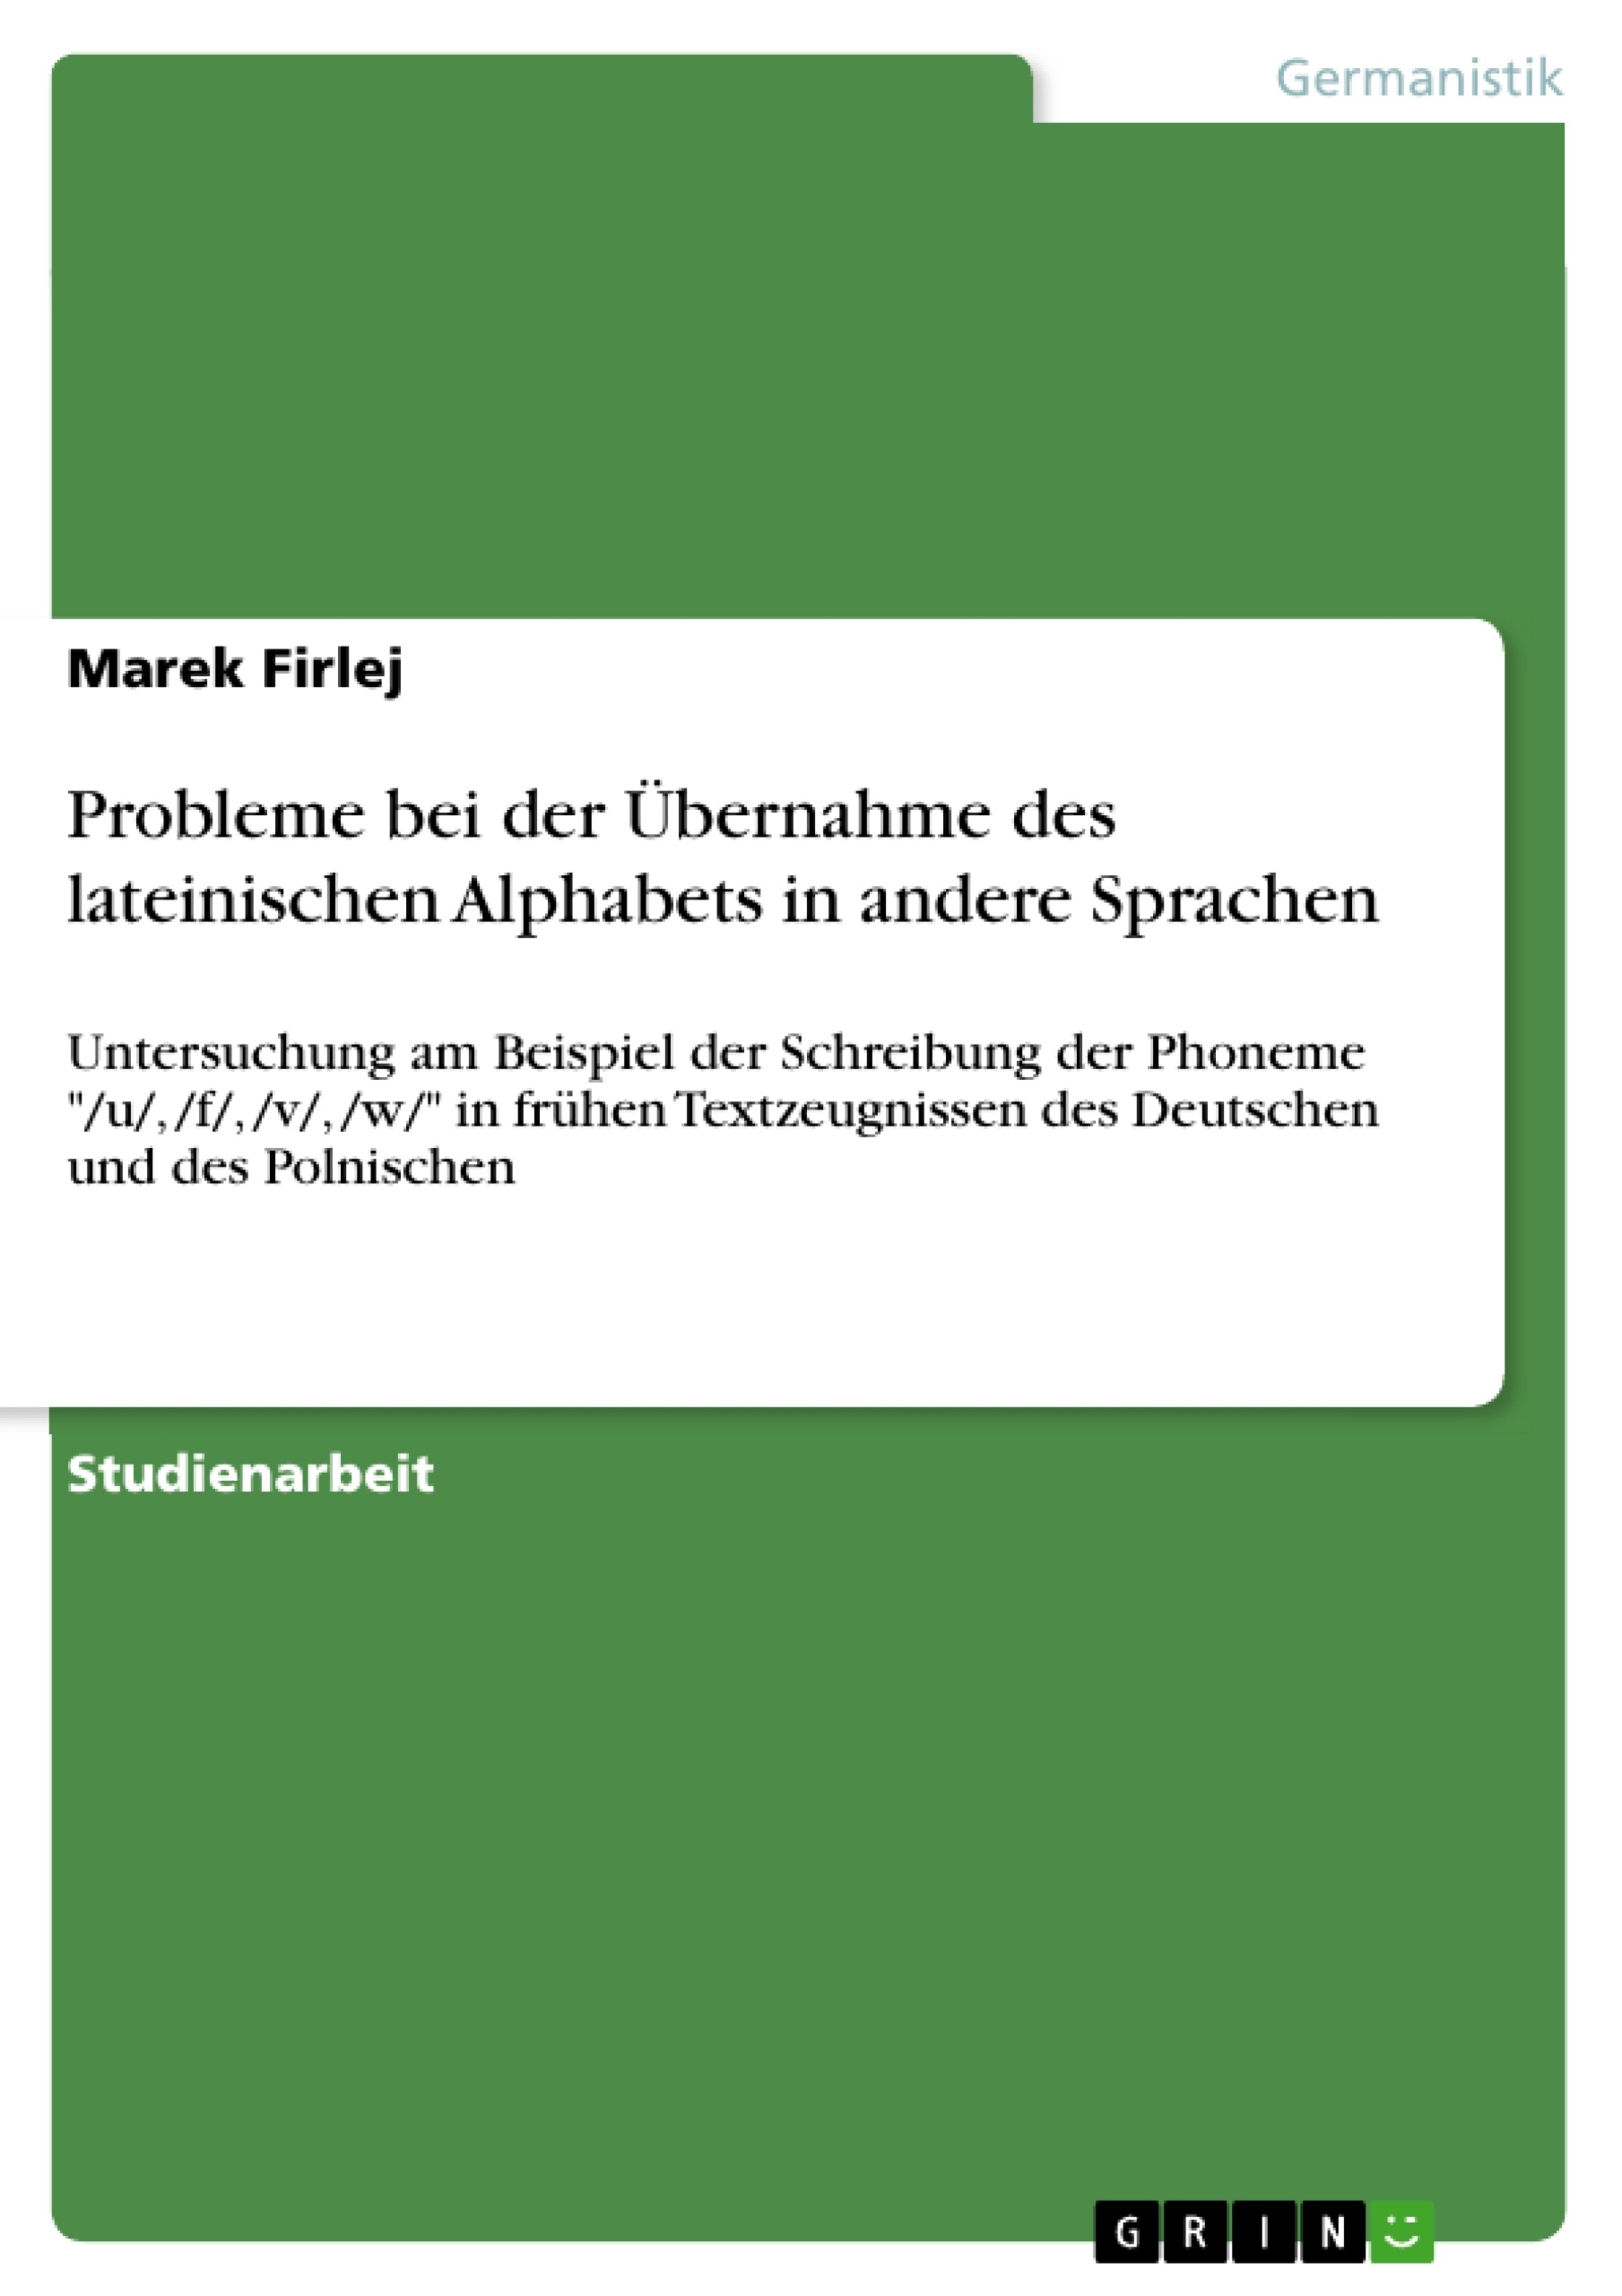 Title: Probleme bei der Übernahme des lateinischen Alphabets in andere Sprachen